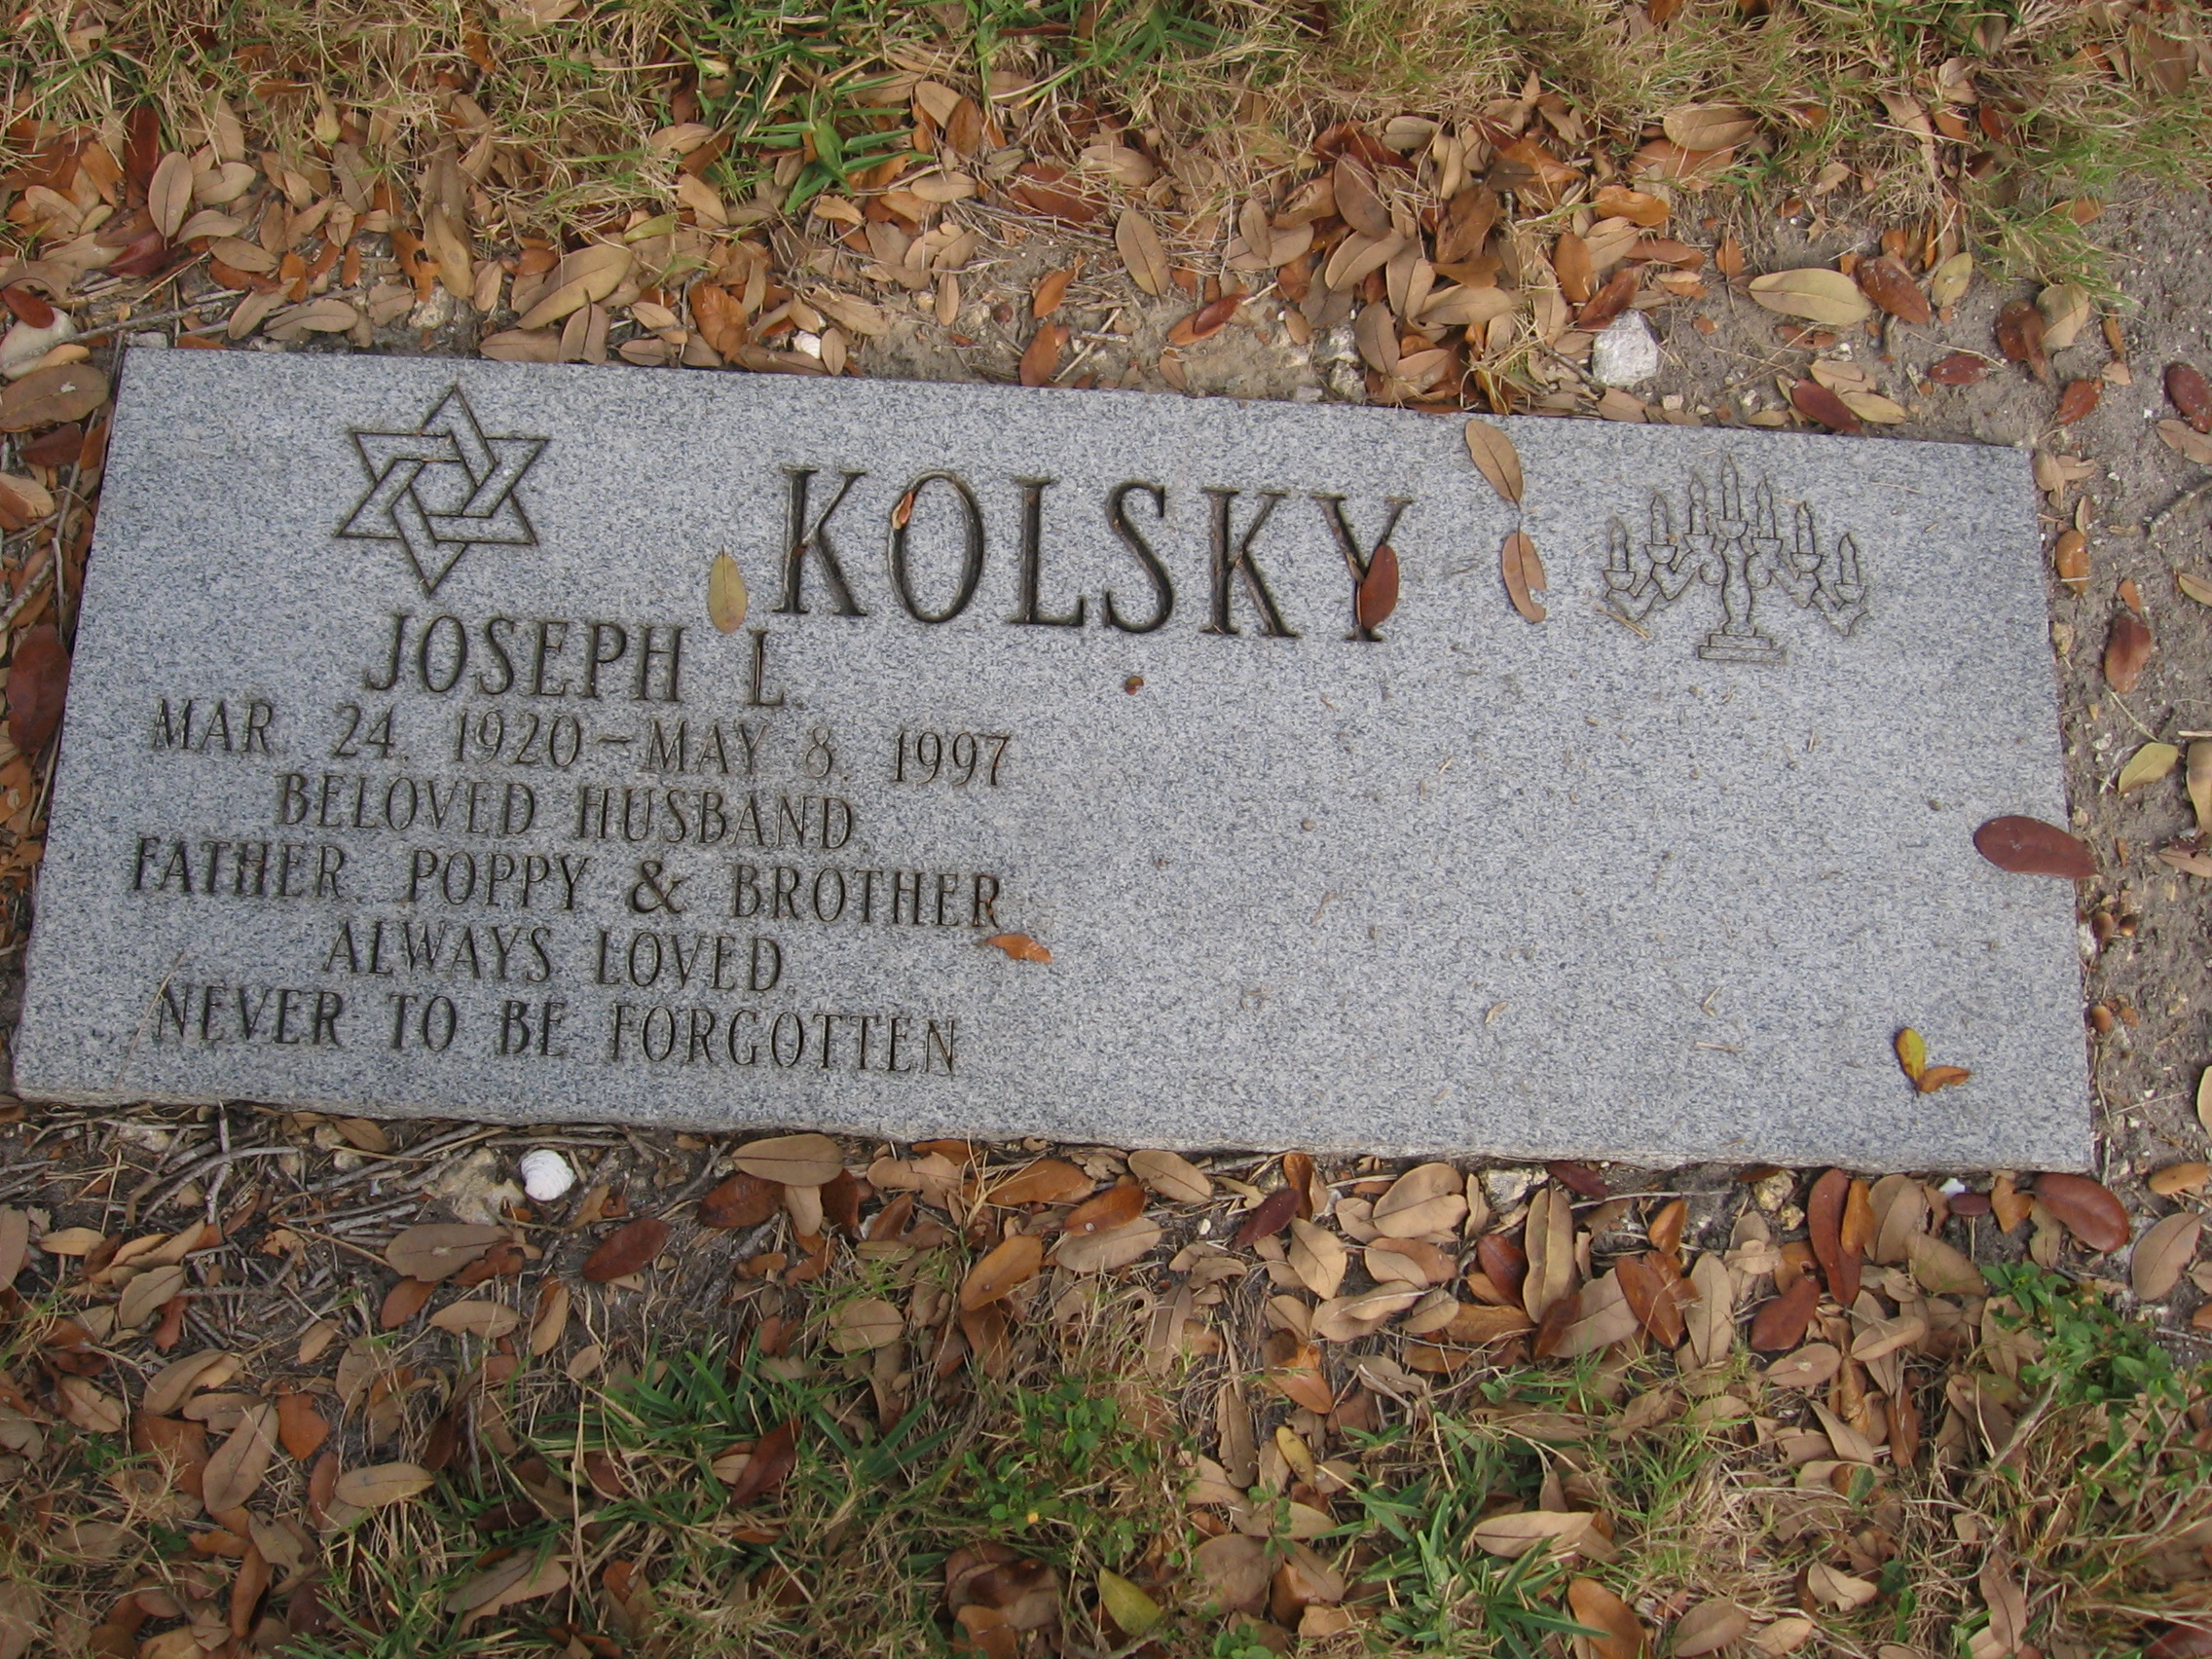 Joseph L Kolsky